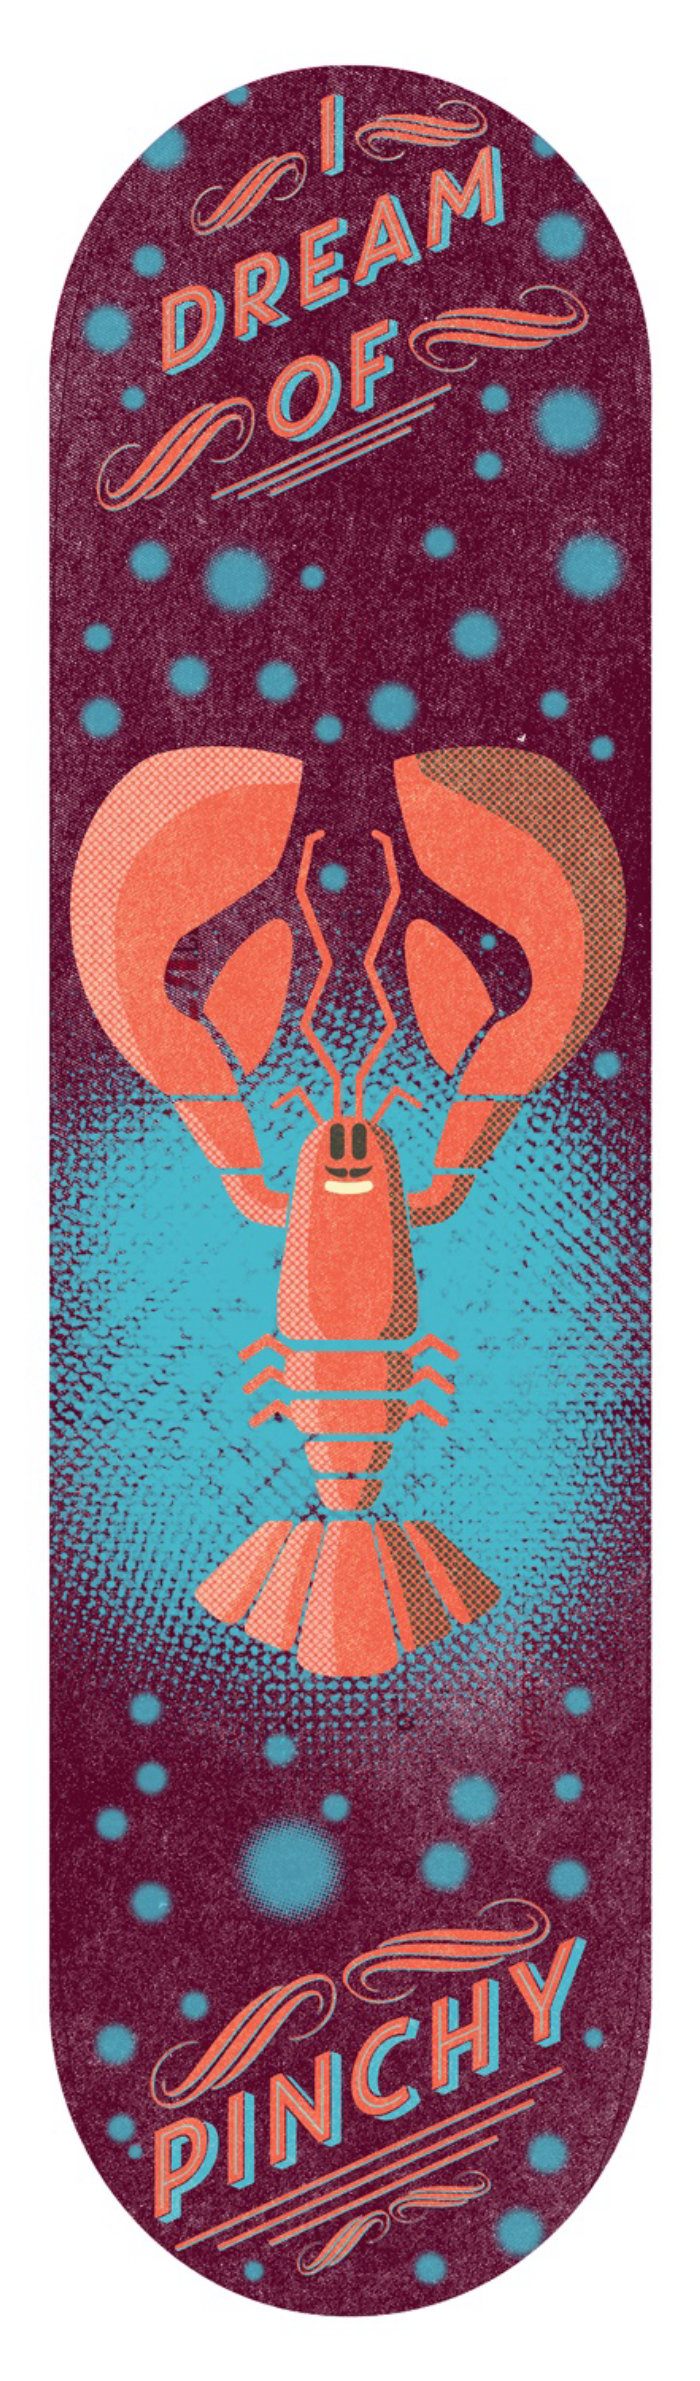 螃蟹的图形设计